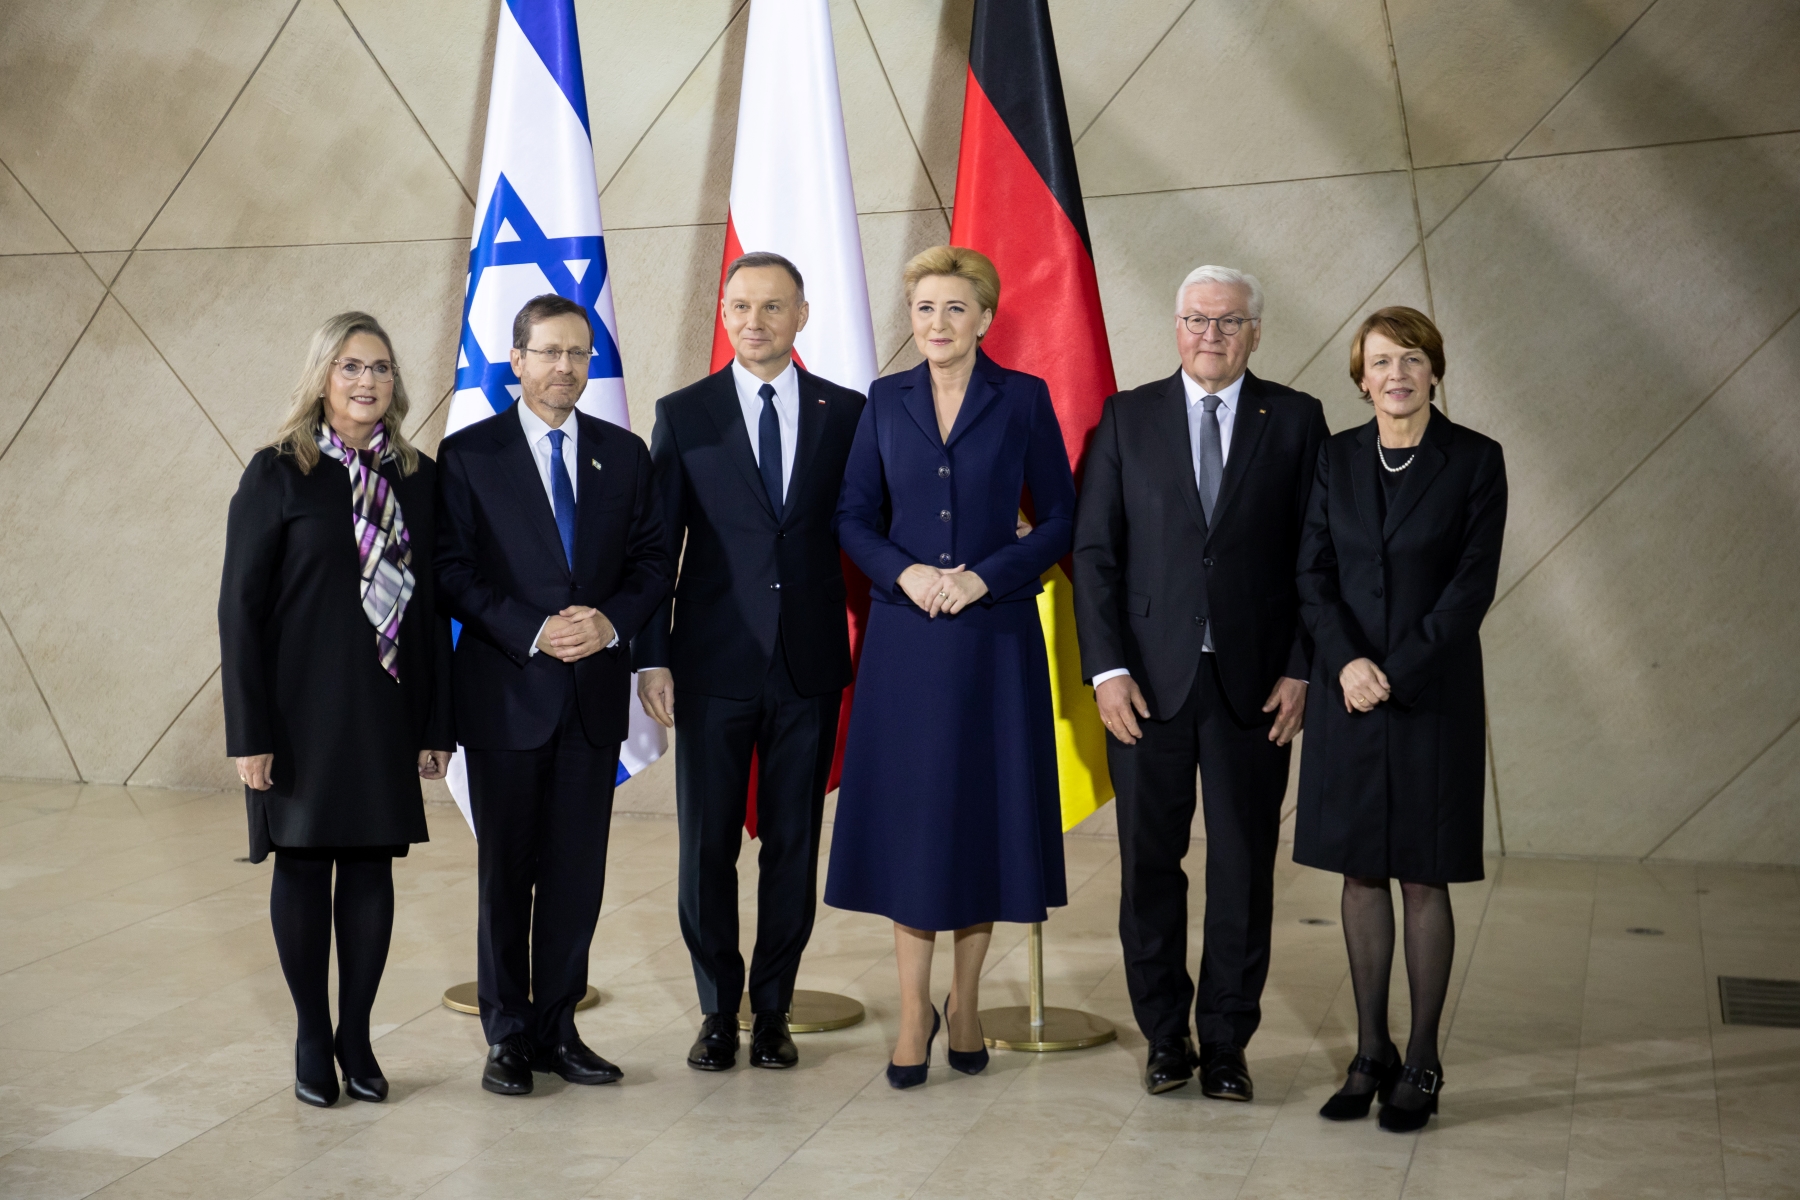 Hol główny Muzeum POLIN. Prezydenci Polski, Izraela i Niemiec wraz z pierwszymi damami. W tle flagi tych krajów.